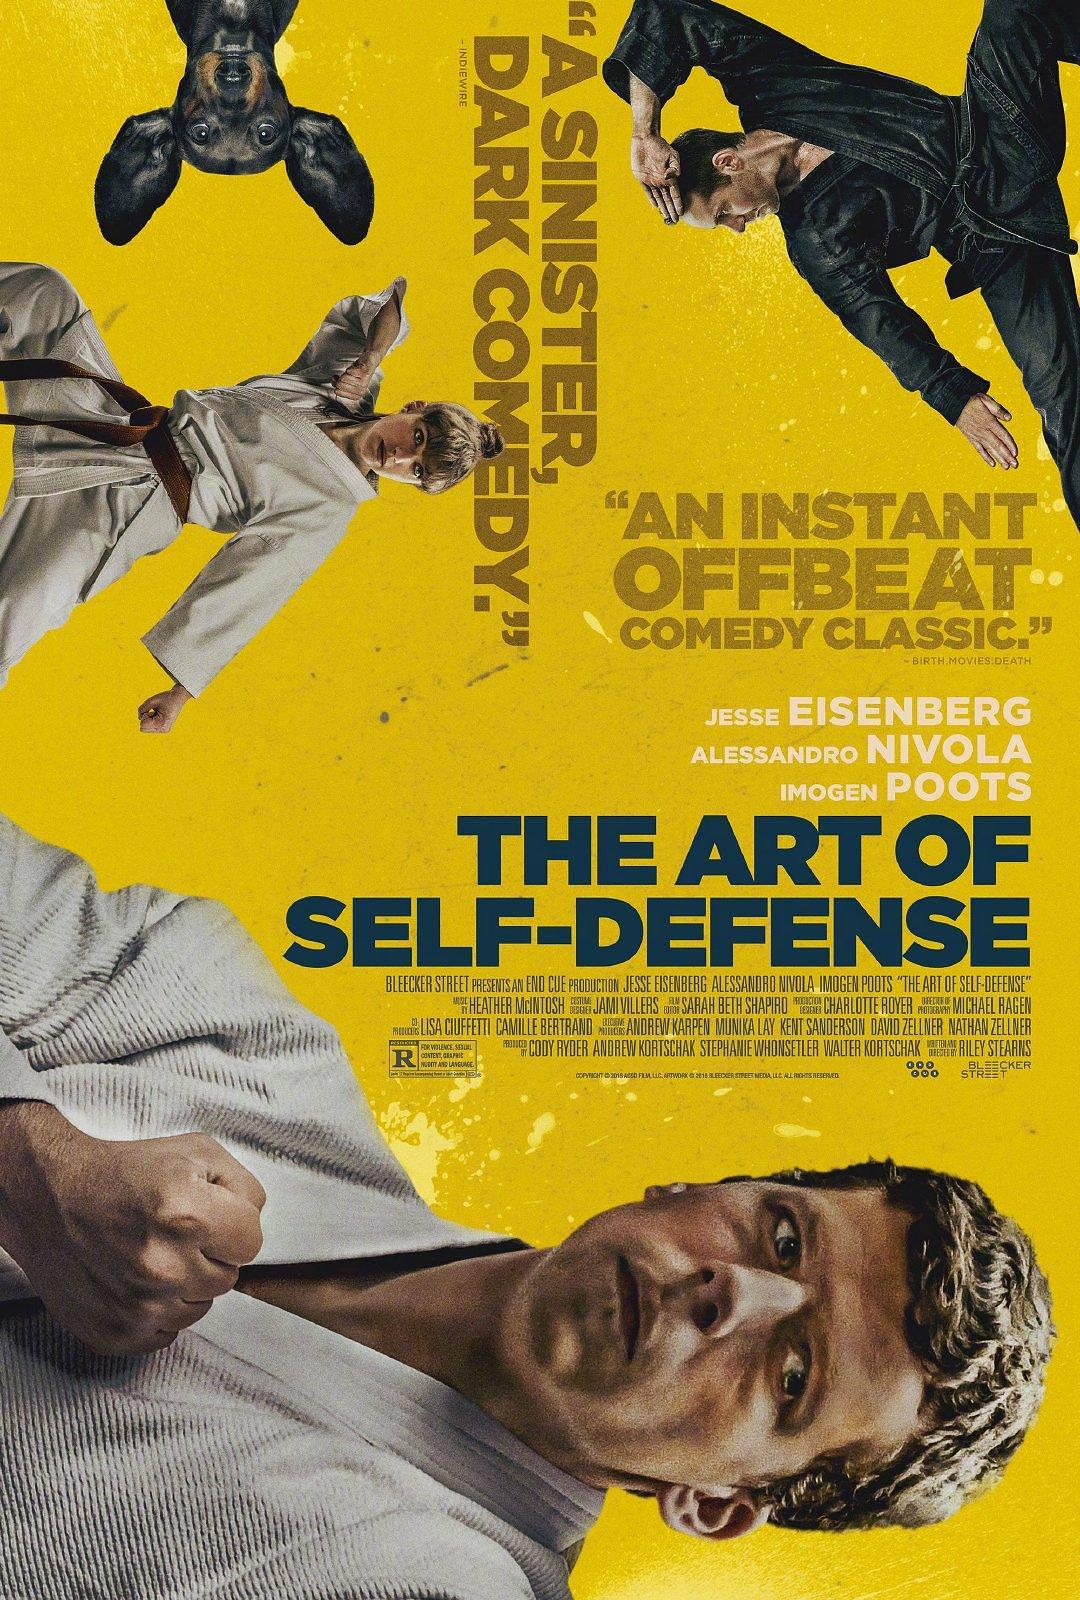 侵占艺术 The.Art.of.Self.Defense.2019.1080p.BluRay.x264.DTS-HD.MA.5.1-FGT 9.97GB-1.png